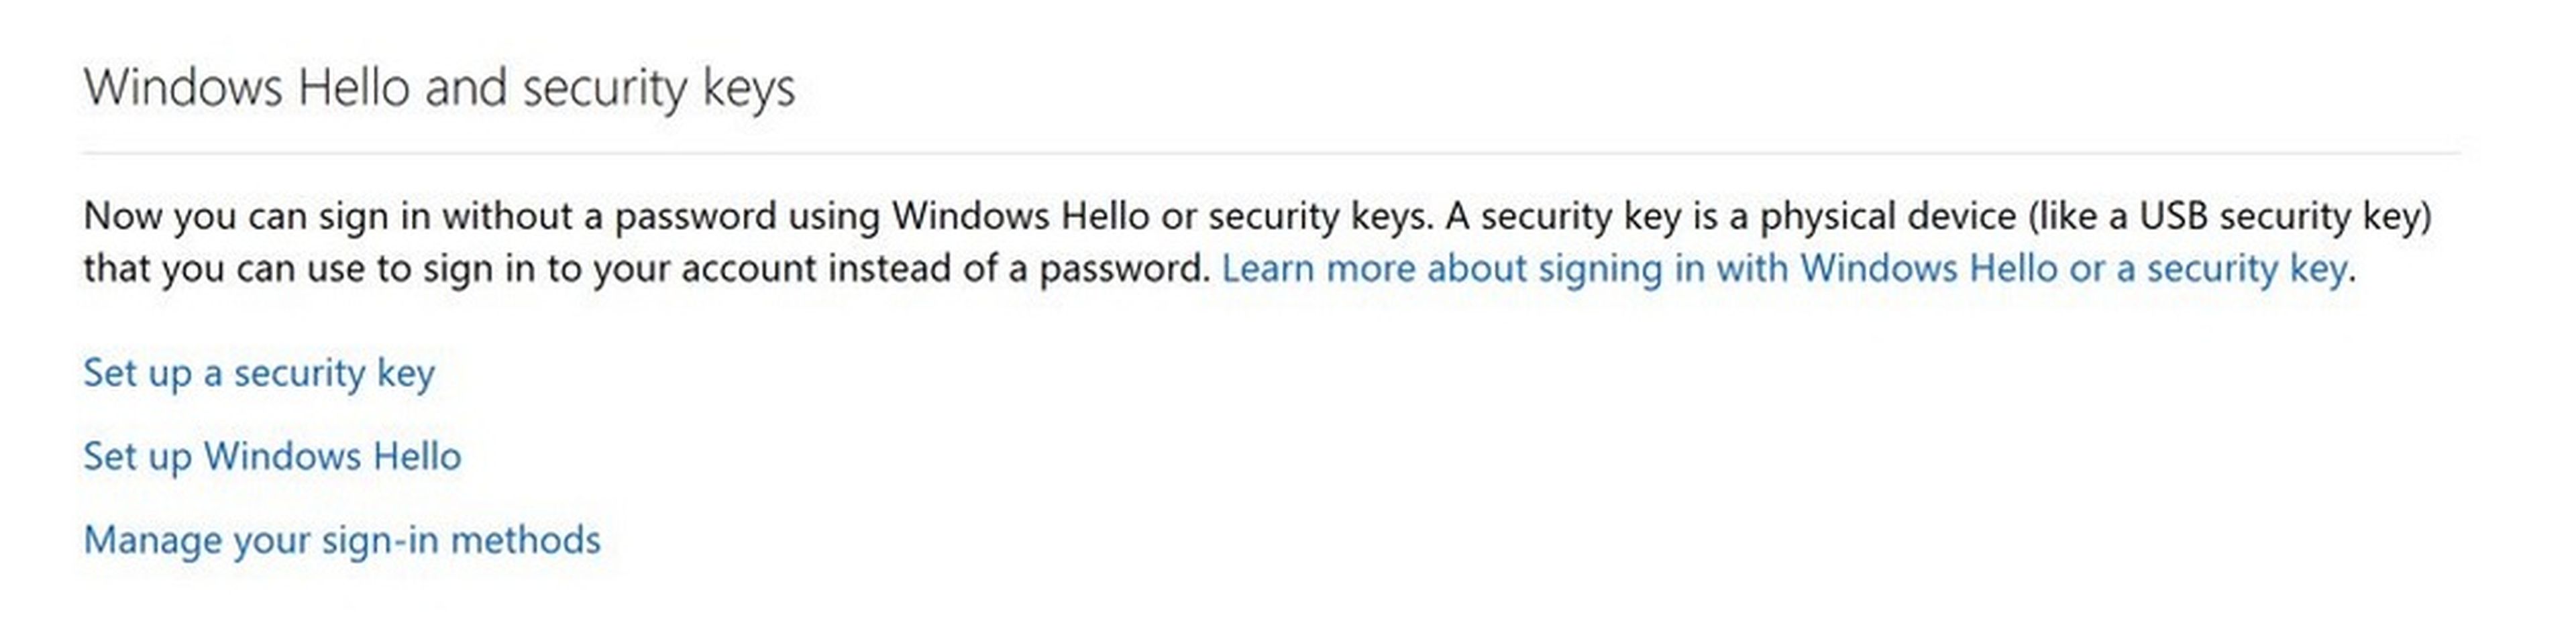 Ya puedes desbloquear Windows y la cuenta de Microsoft sin contraseña, con una llave USB